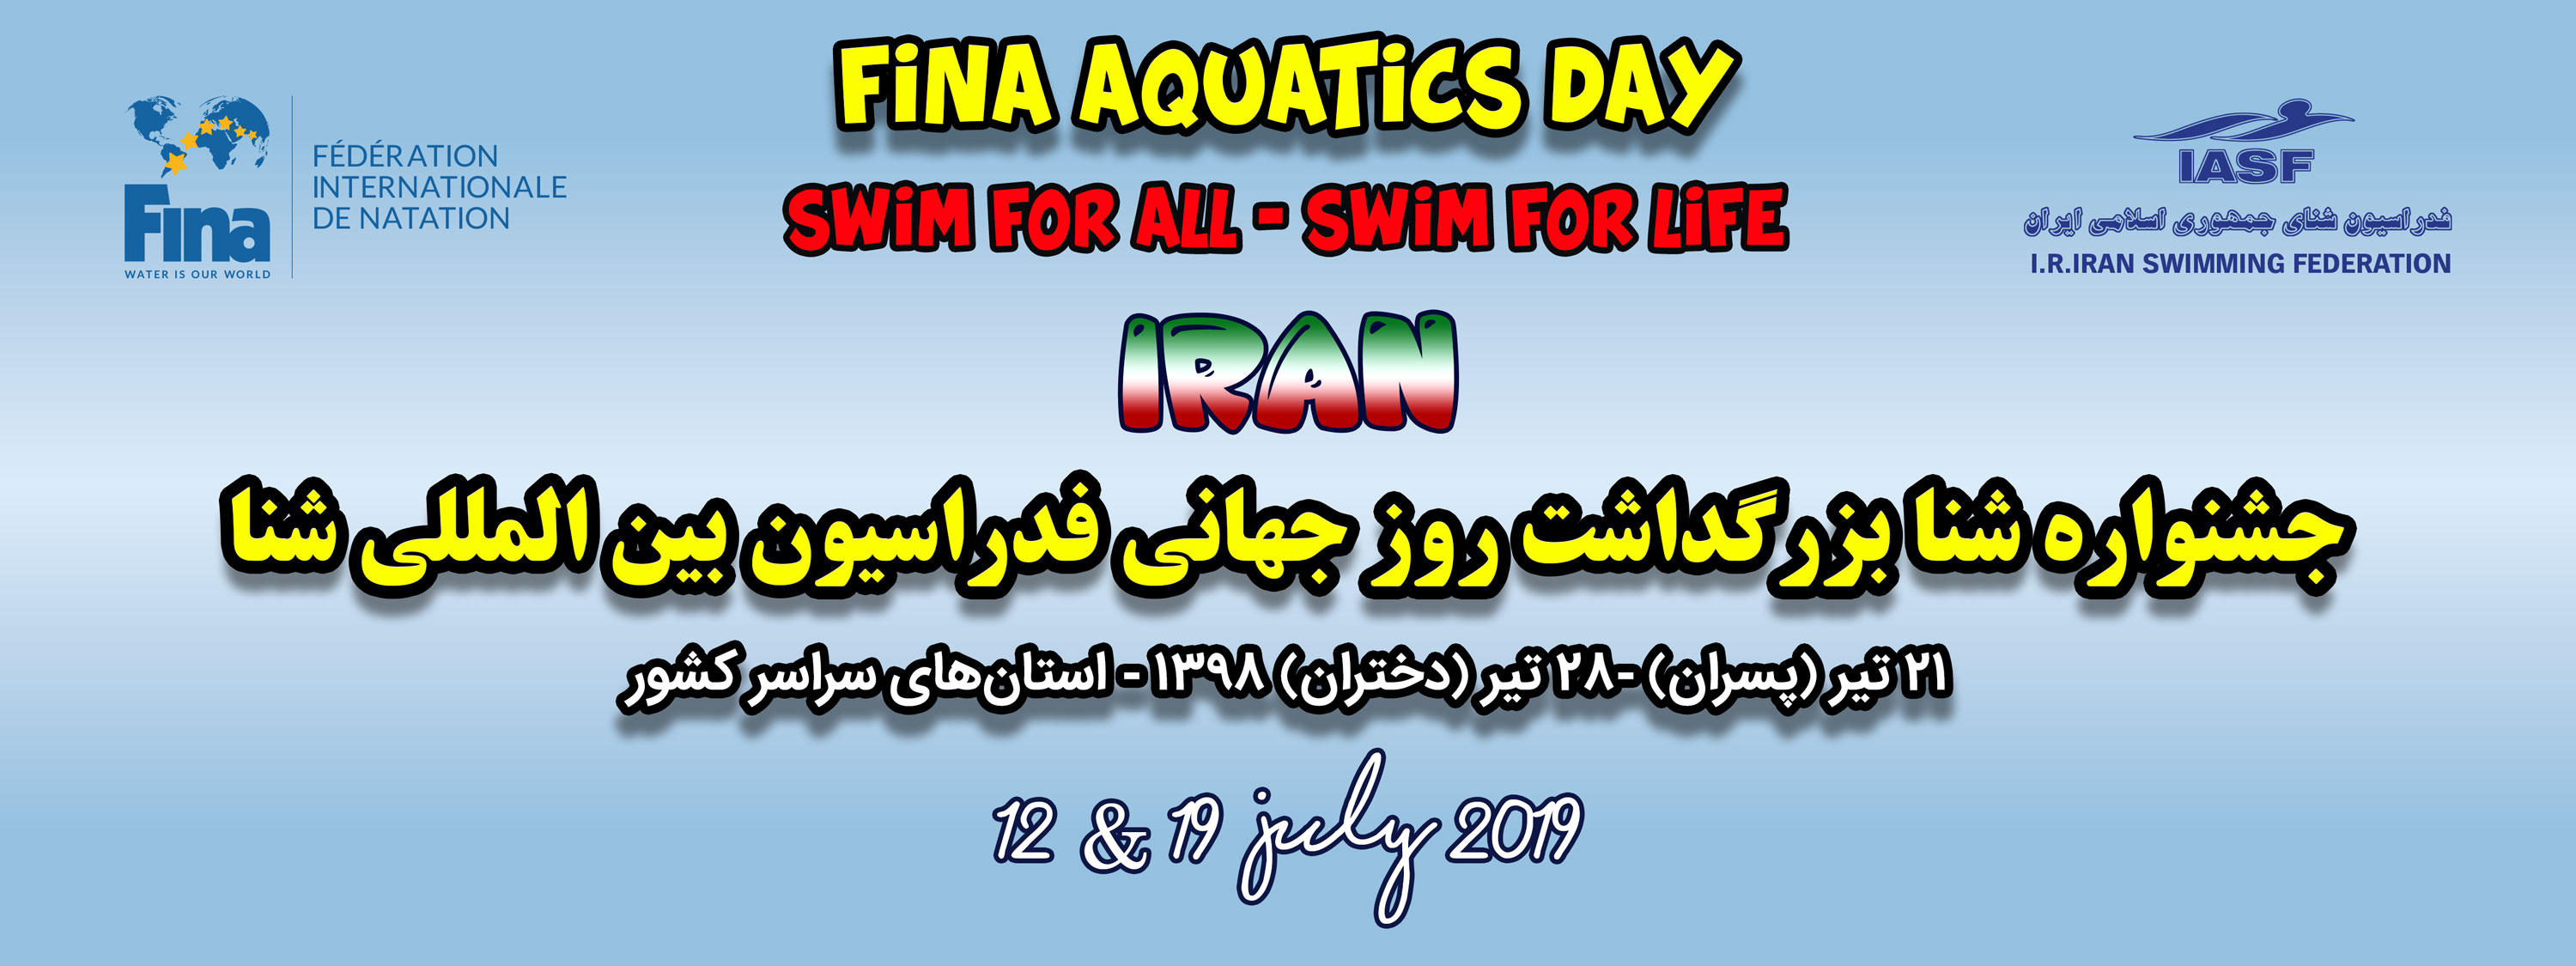 برگزاری جشنواره شنا به مناسبت روز جهانی فدراسیون بین المللی شنا